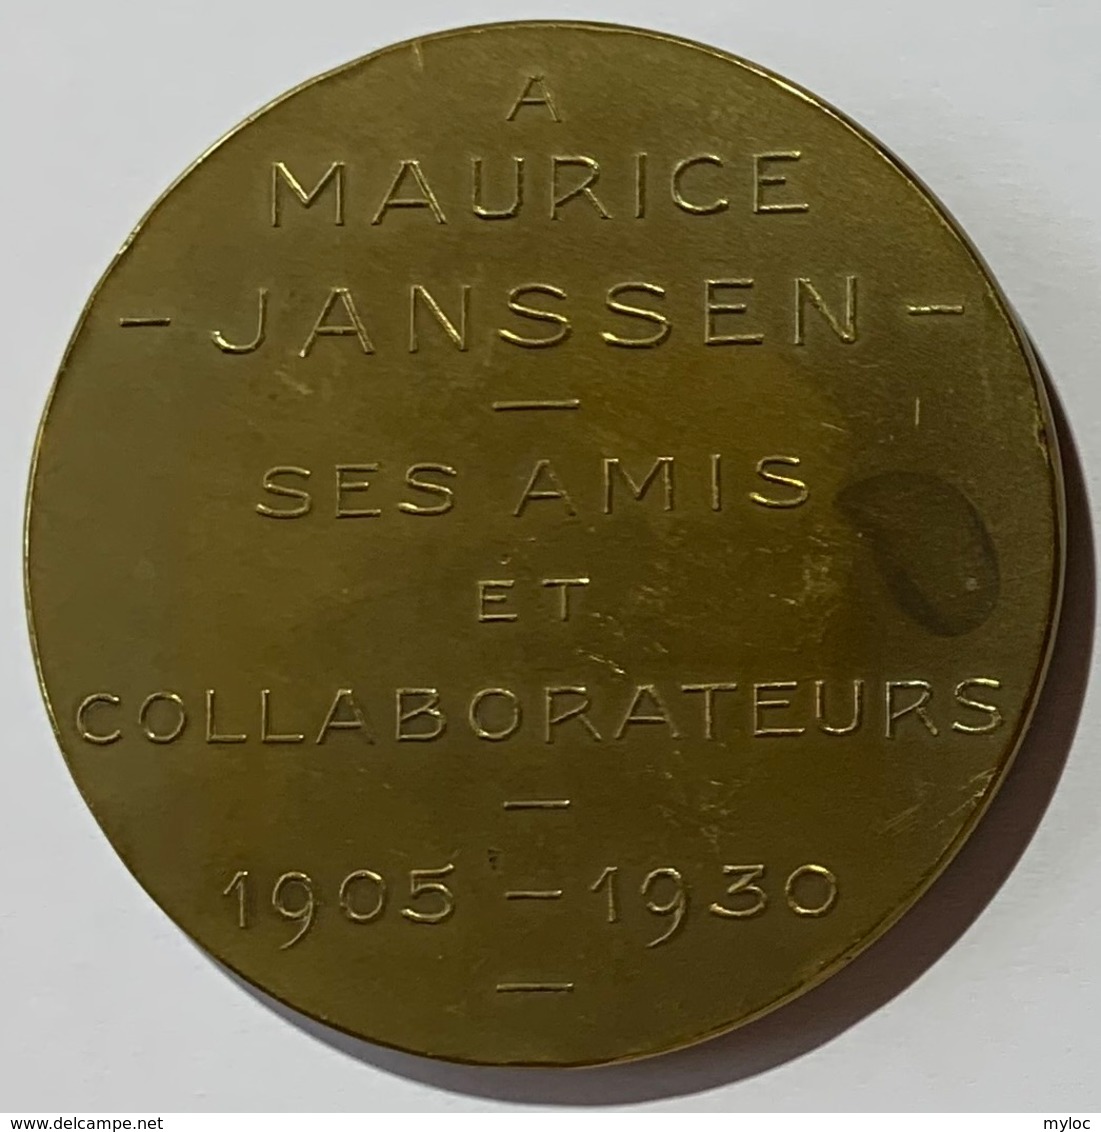 Médaille Bronze. Maurice Janssen. A Mautice Janssen. Ses Amis Et Collaborateurs. 1905-1930. Armand Bonnetain. - Profesionales / De Sociedad